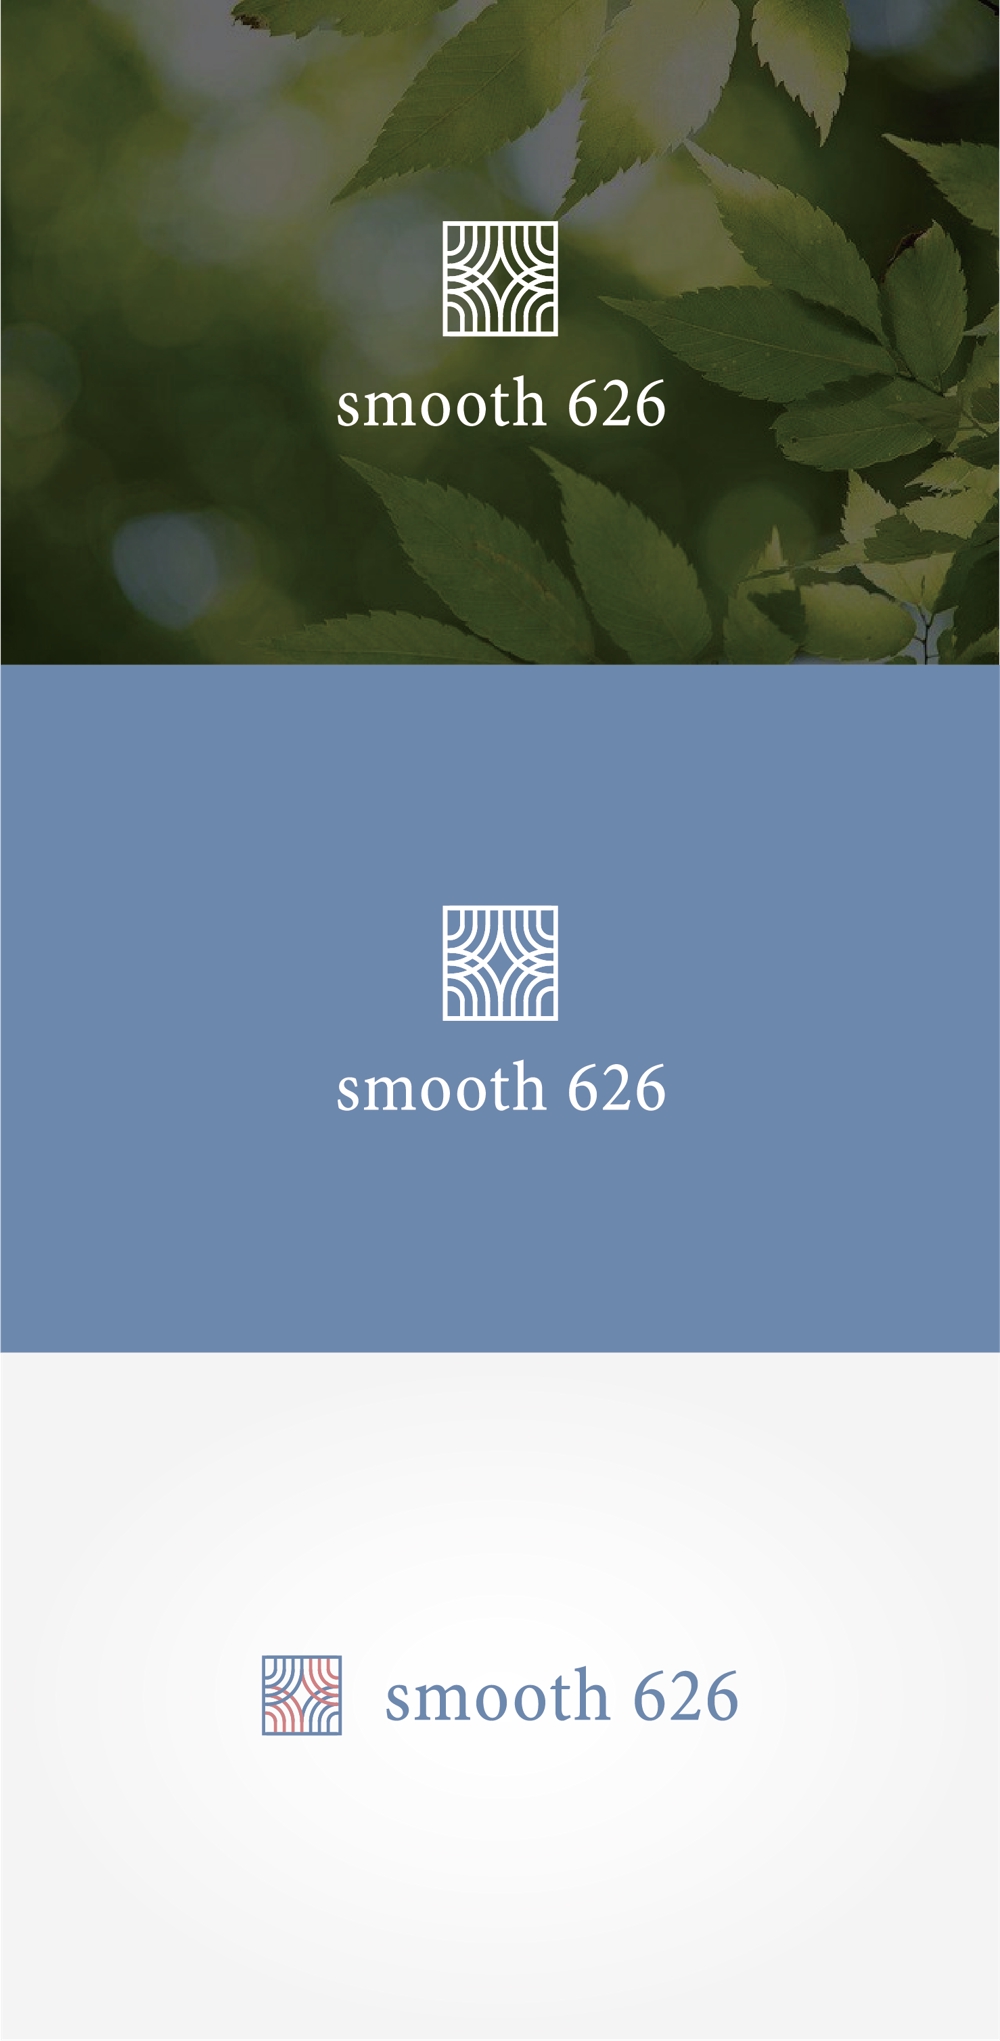 脱毛サロン「smooth 626」の　ロゴ